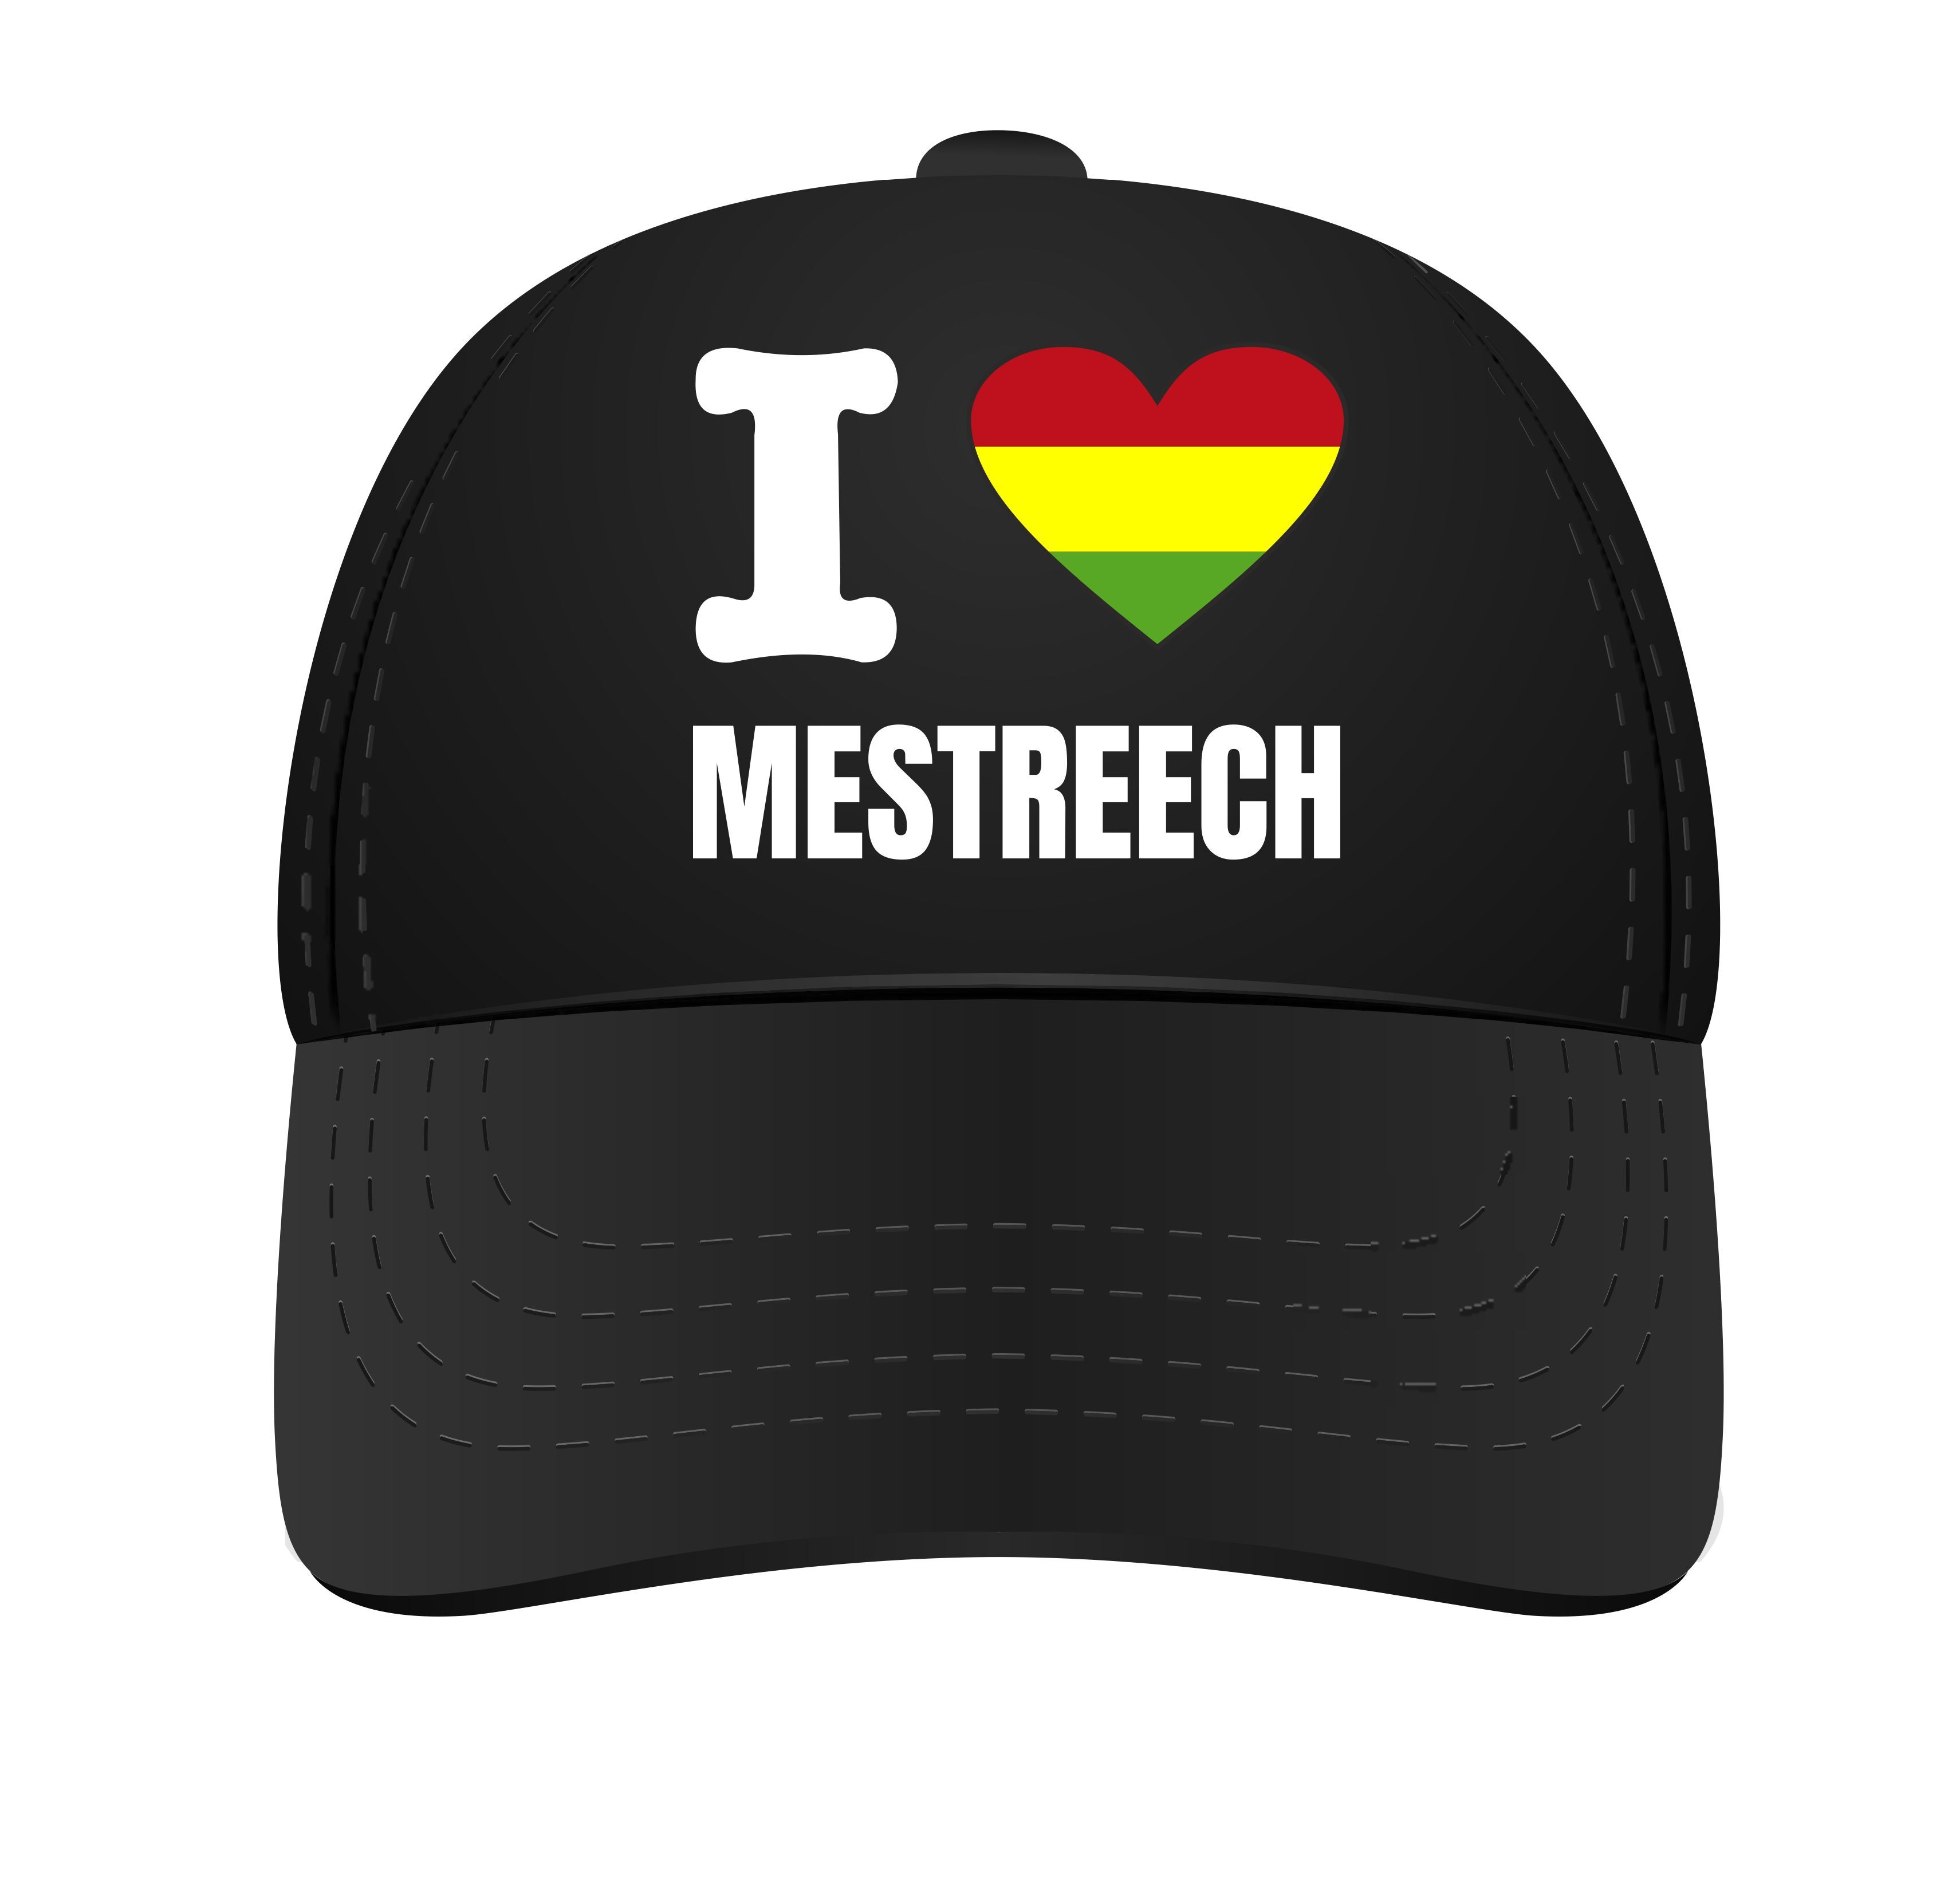 De pet voor Carnaval Maastricht Mestreech